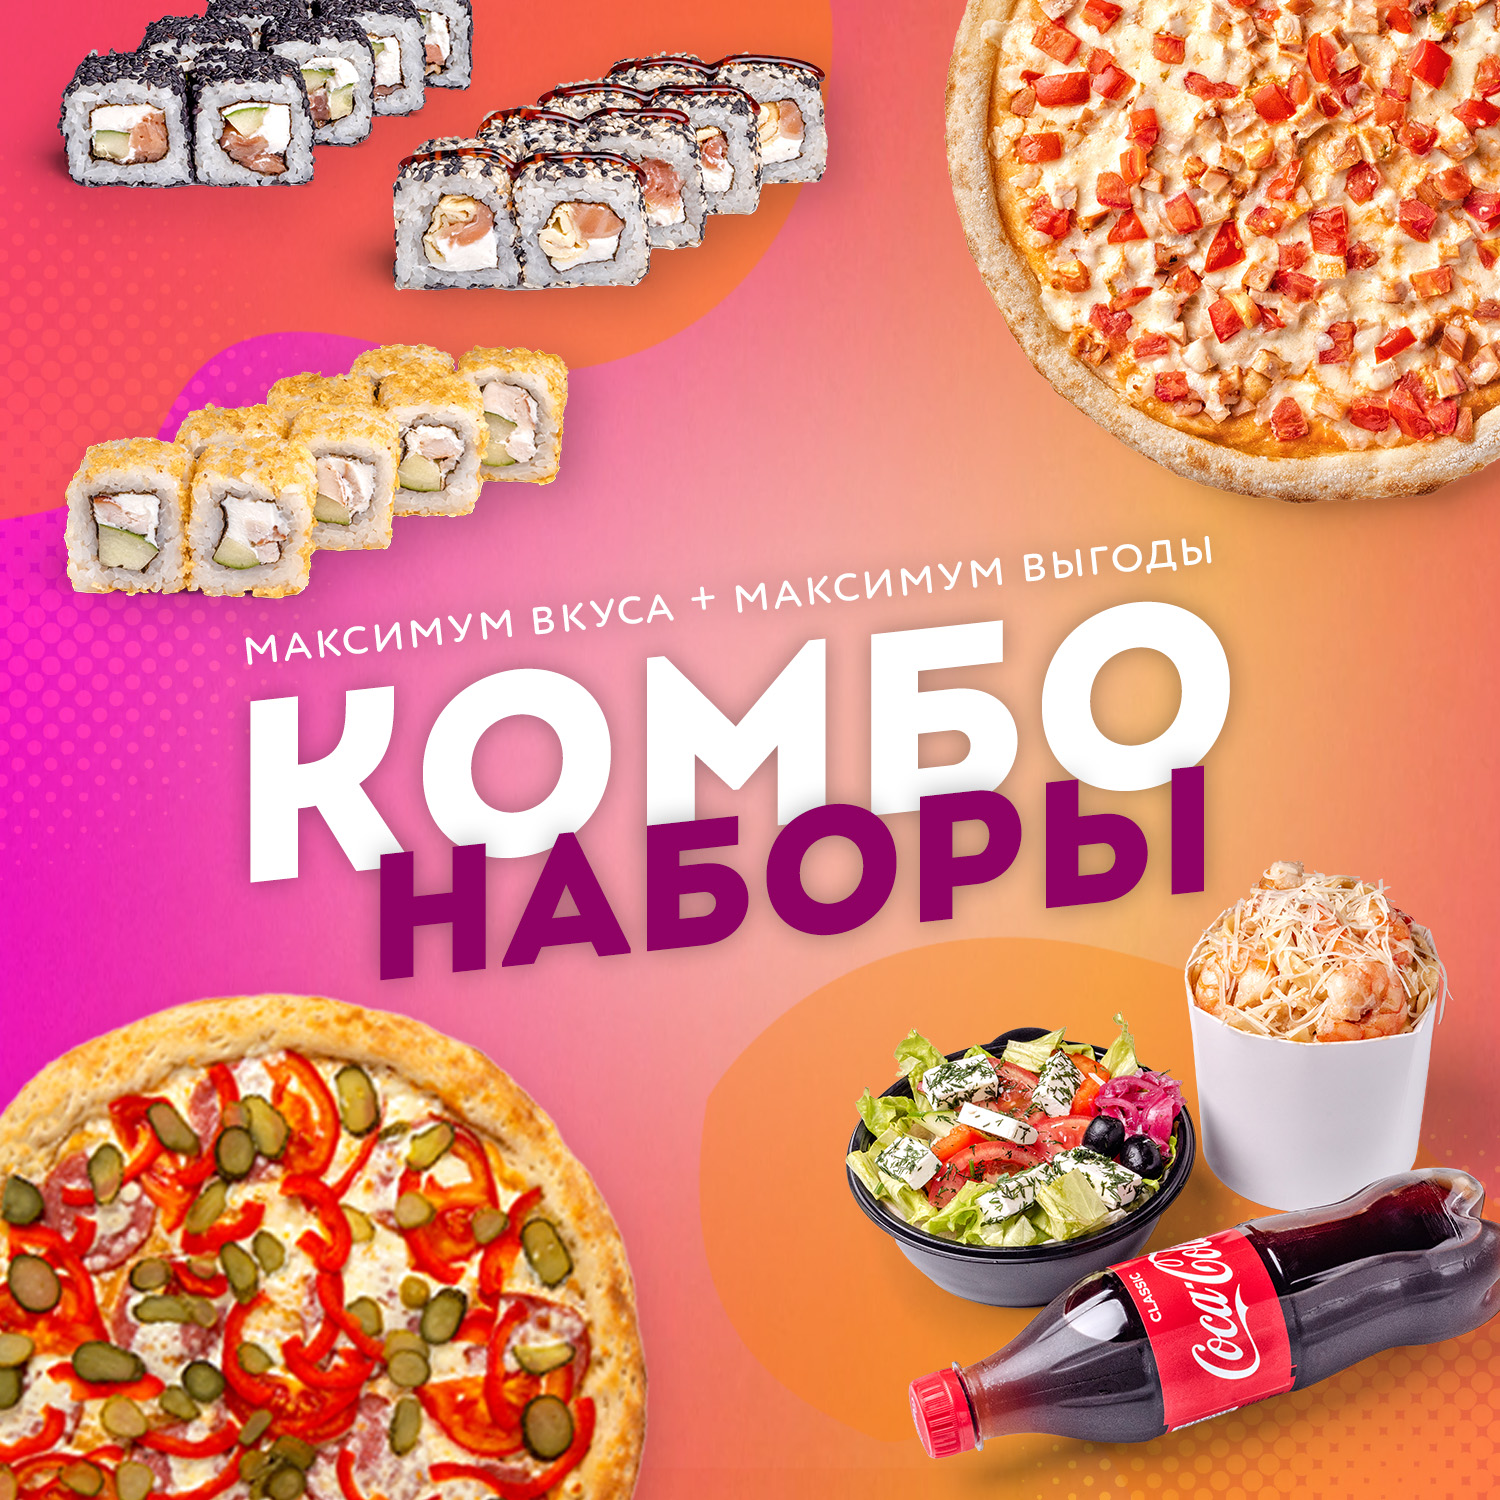 Заказать суши и пиццу в красноярске с бесплатной фото 40